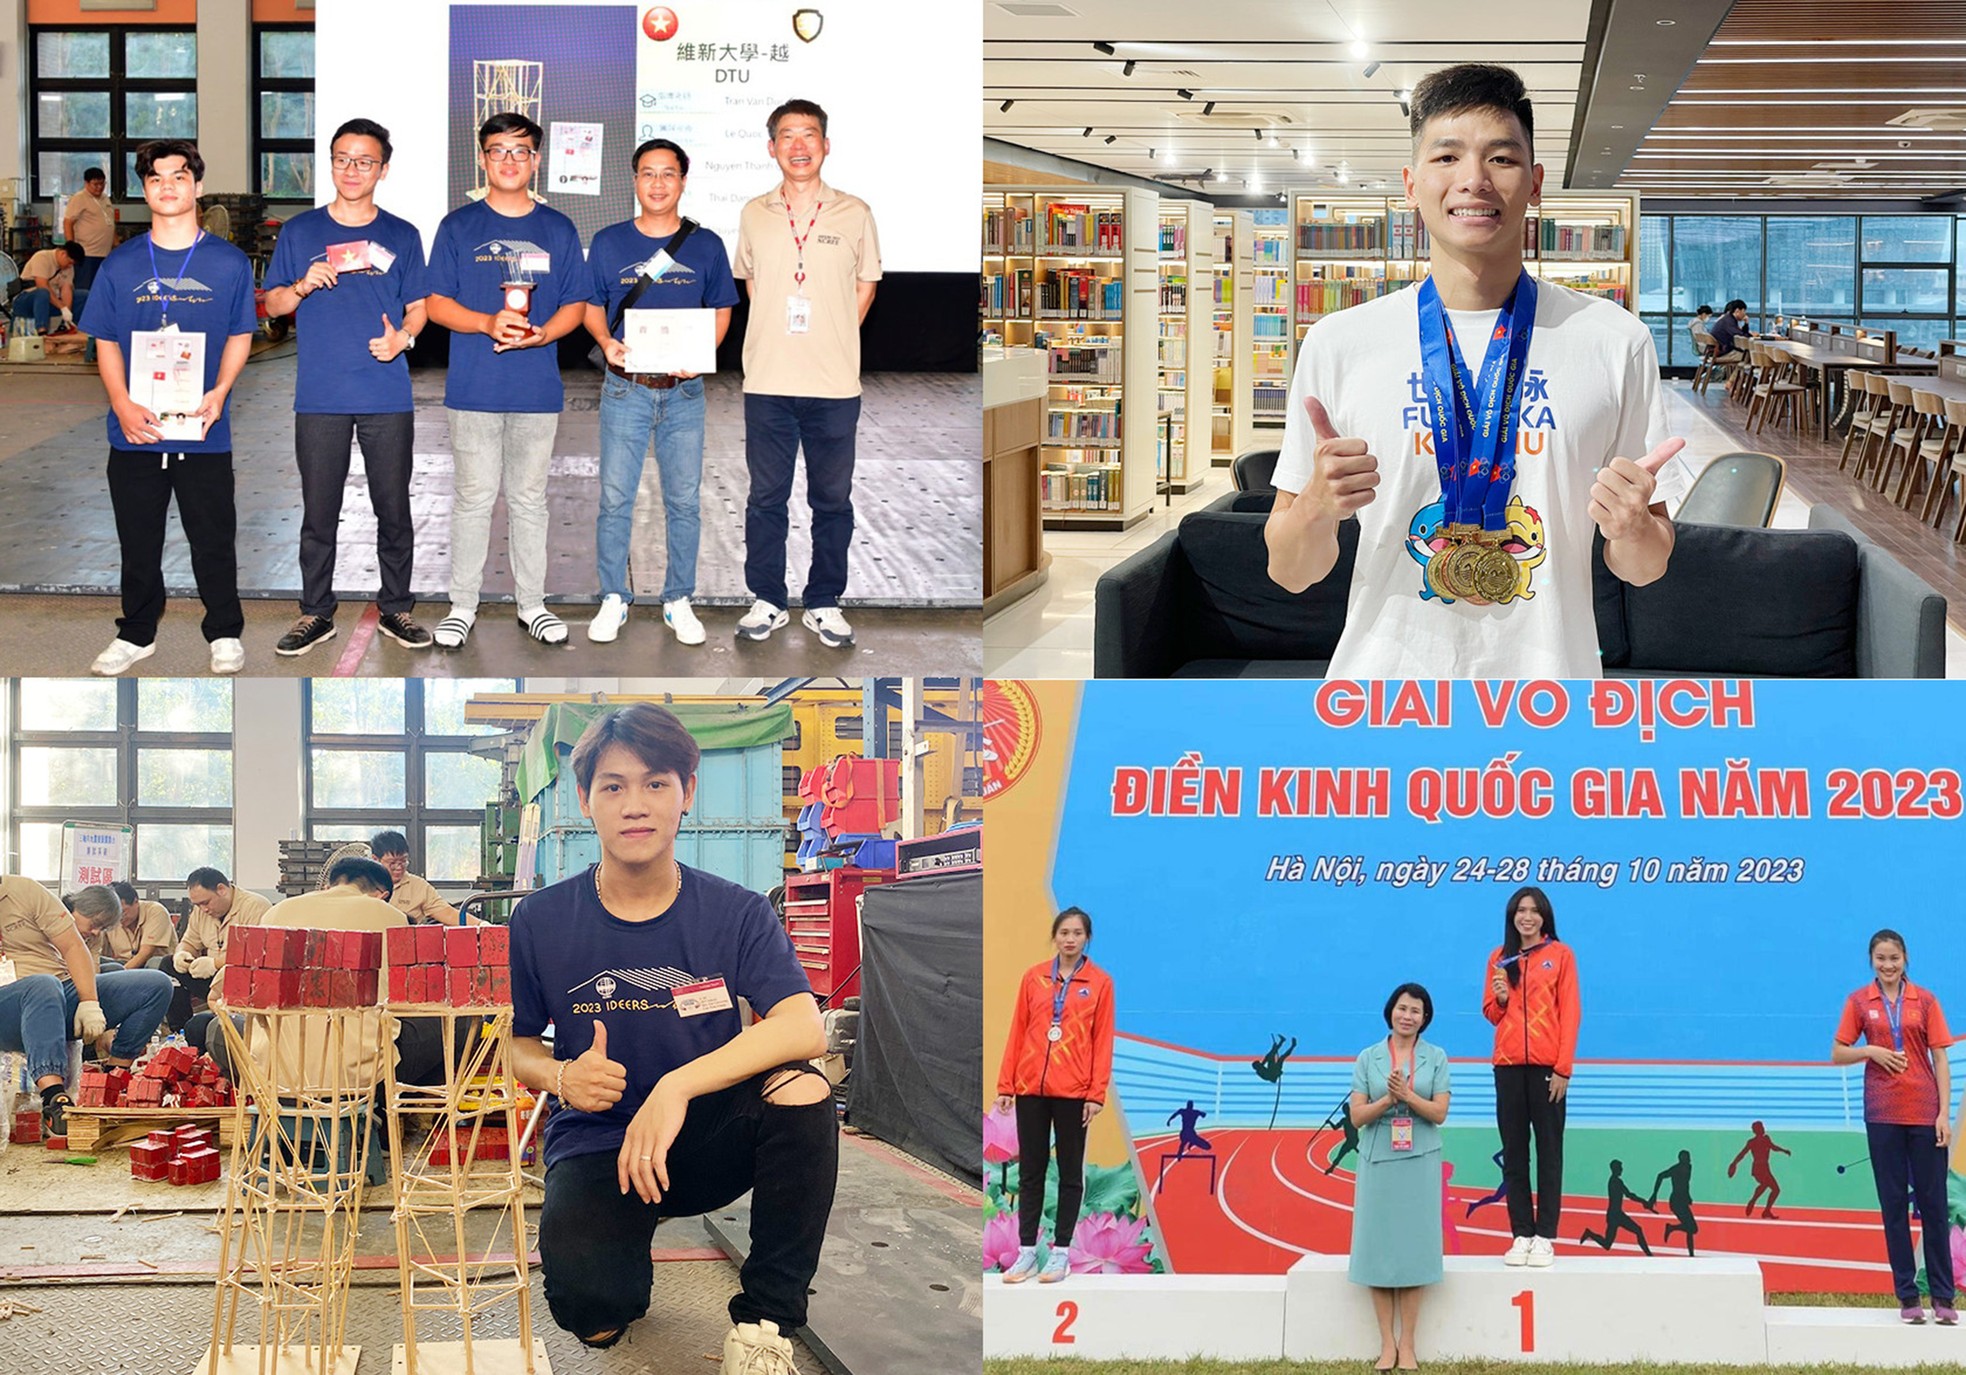 Nhóm sinh viên Đại học Duy Tân giành giải Nhì "Bệ phóng khởi nghiệp" Anh-7-7894